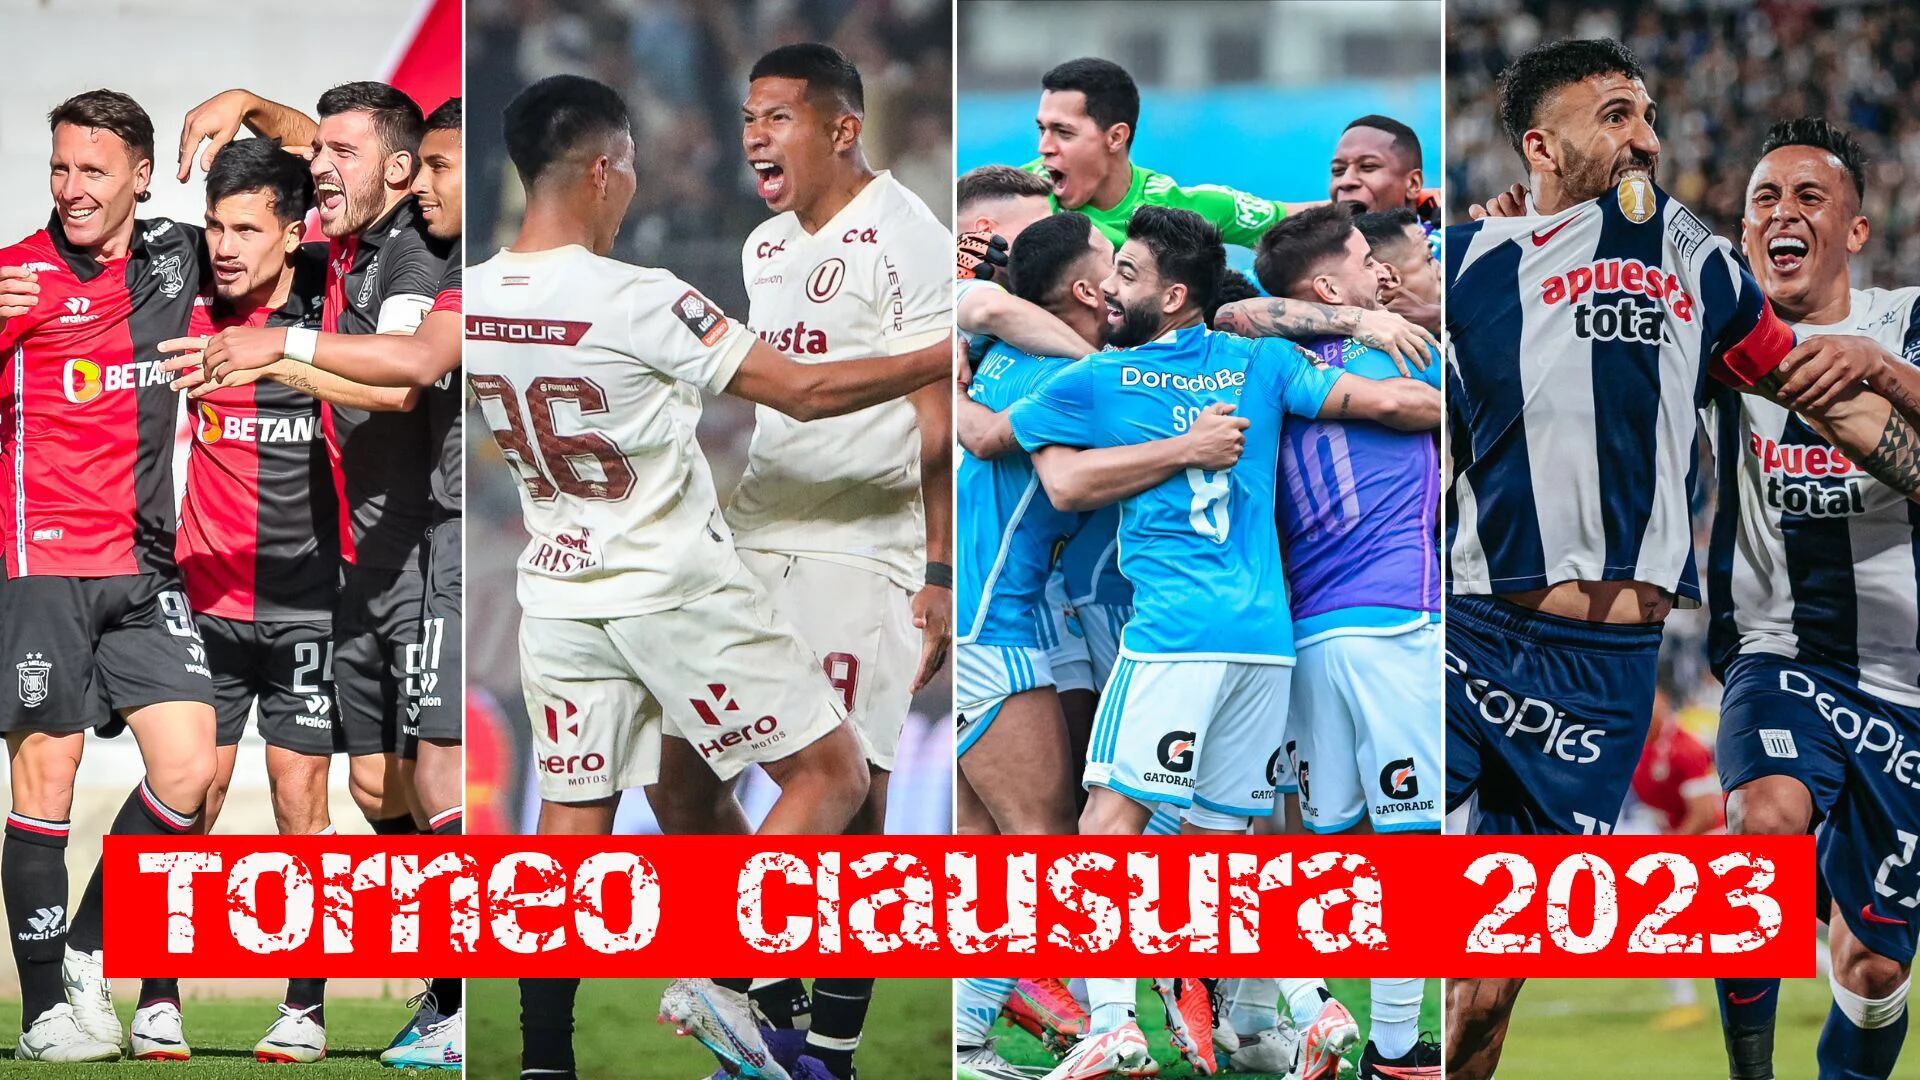 Melgar, Universitario de Deportes, Sporting Cristal y Alianza Lima están luchando para llevarse el Torneo Clausura 2023.